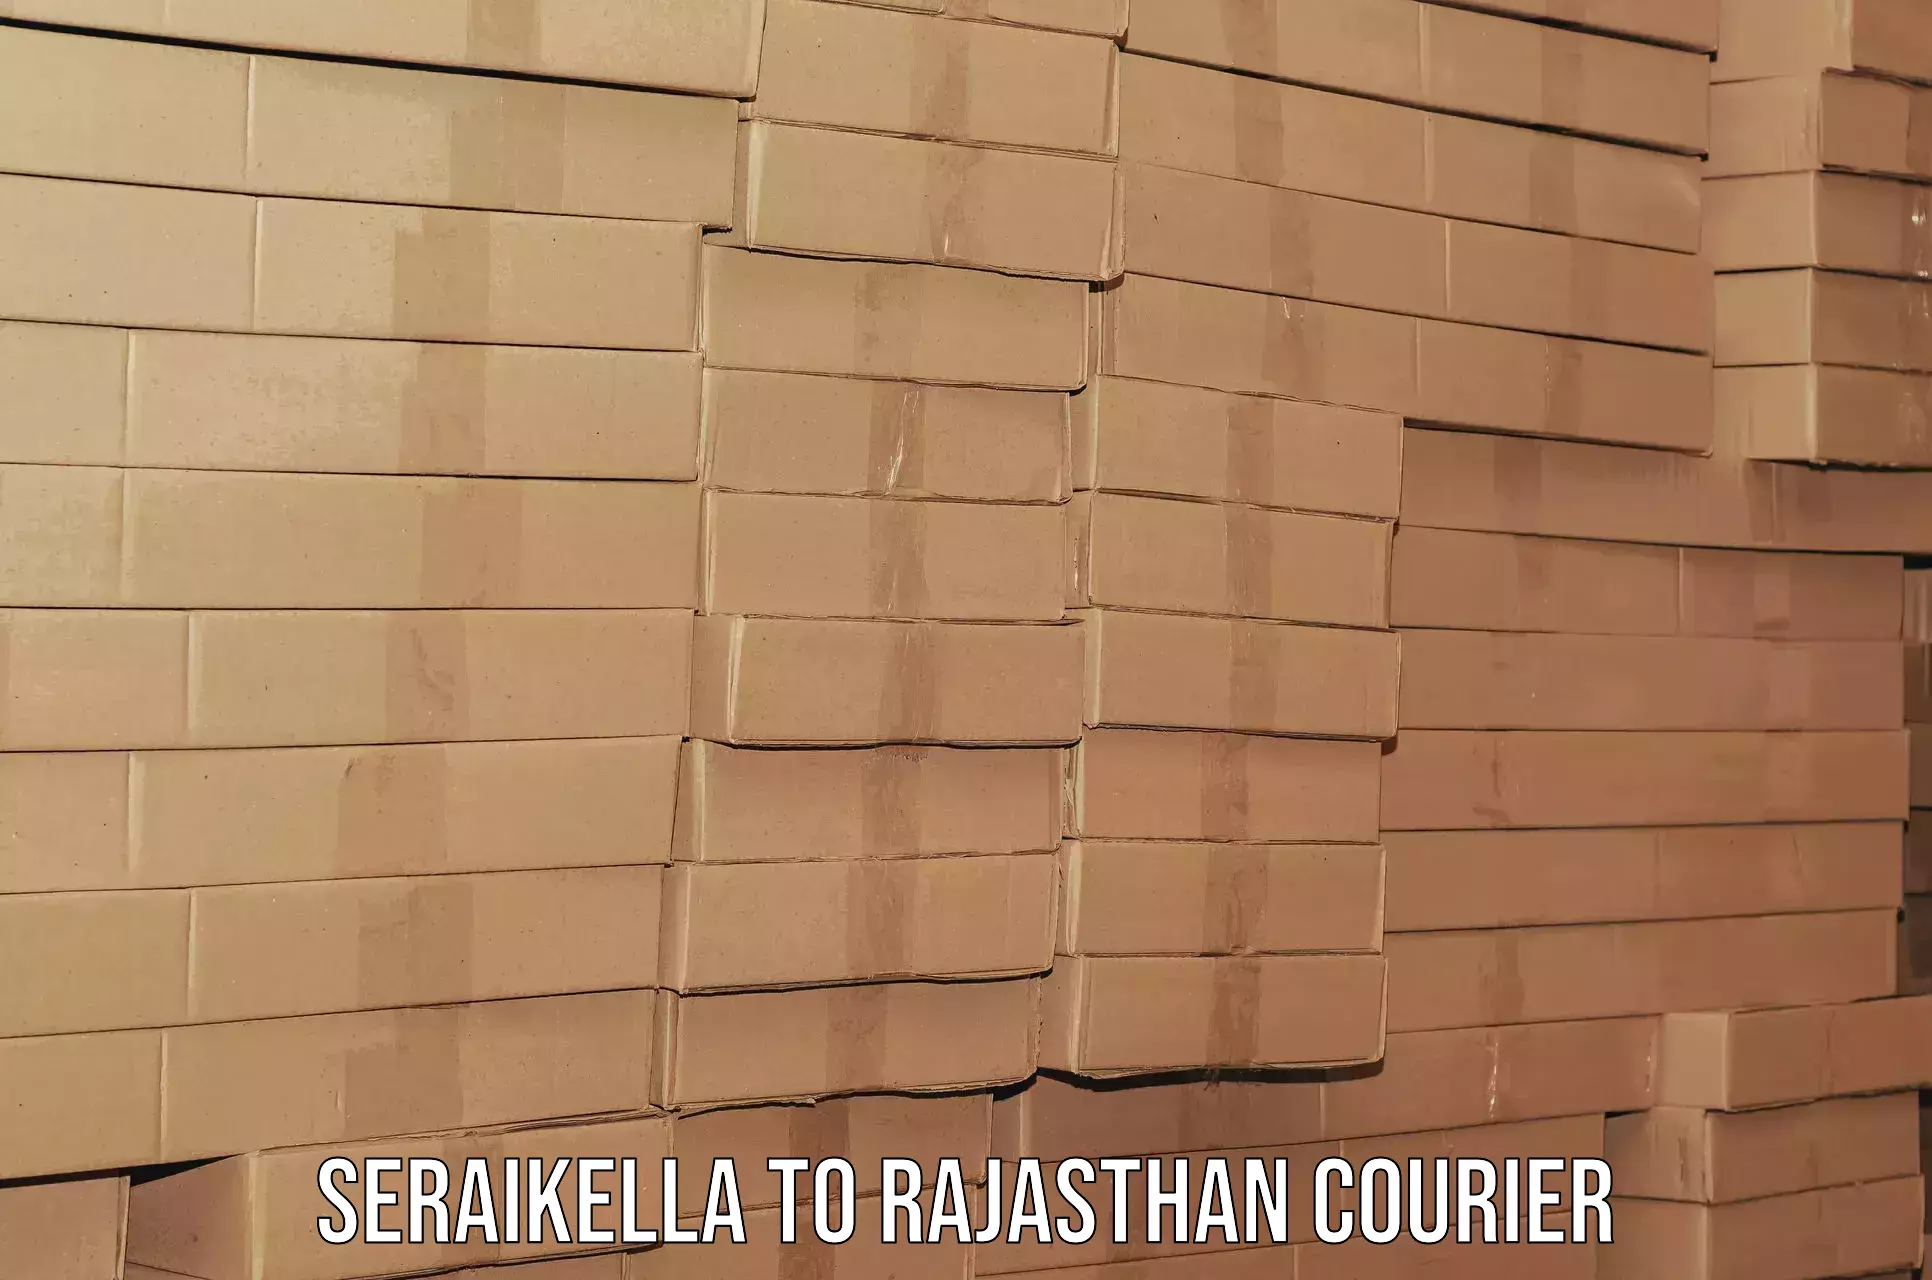 Professional furniture movers Seraikella to Yathalakunta